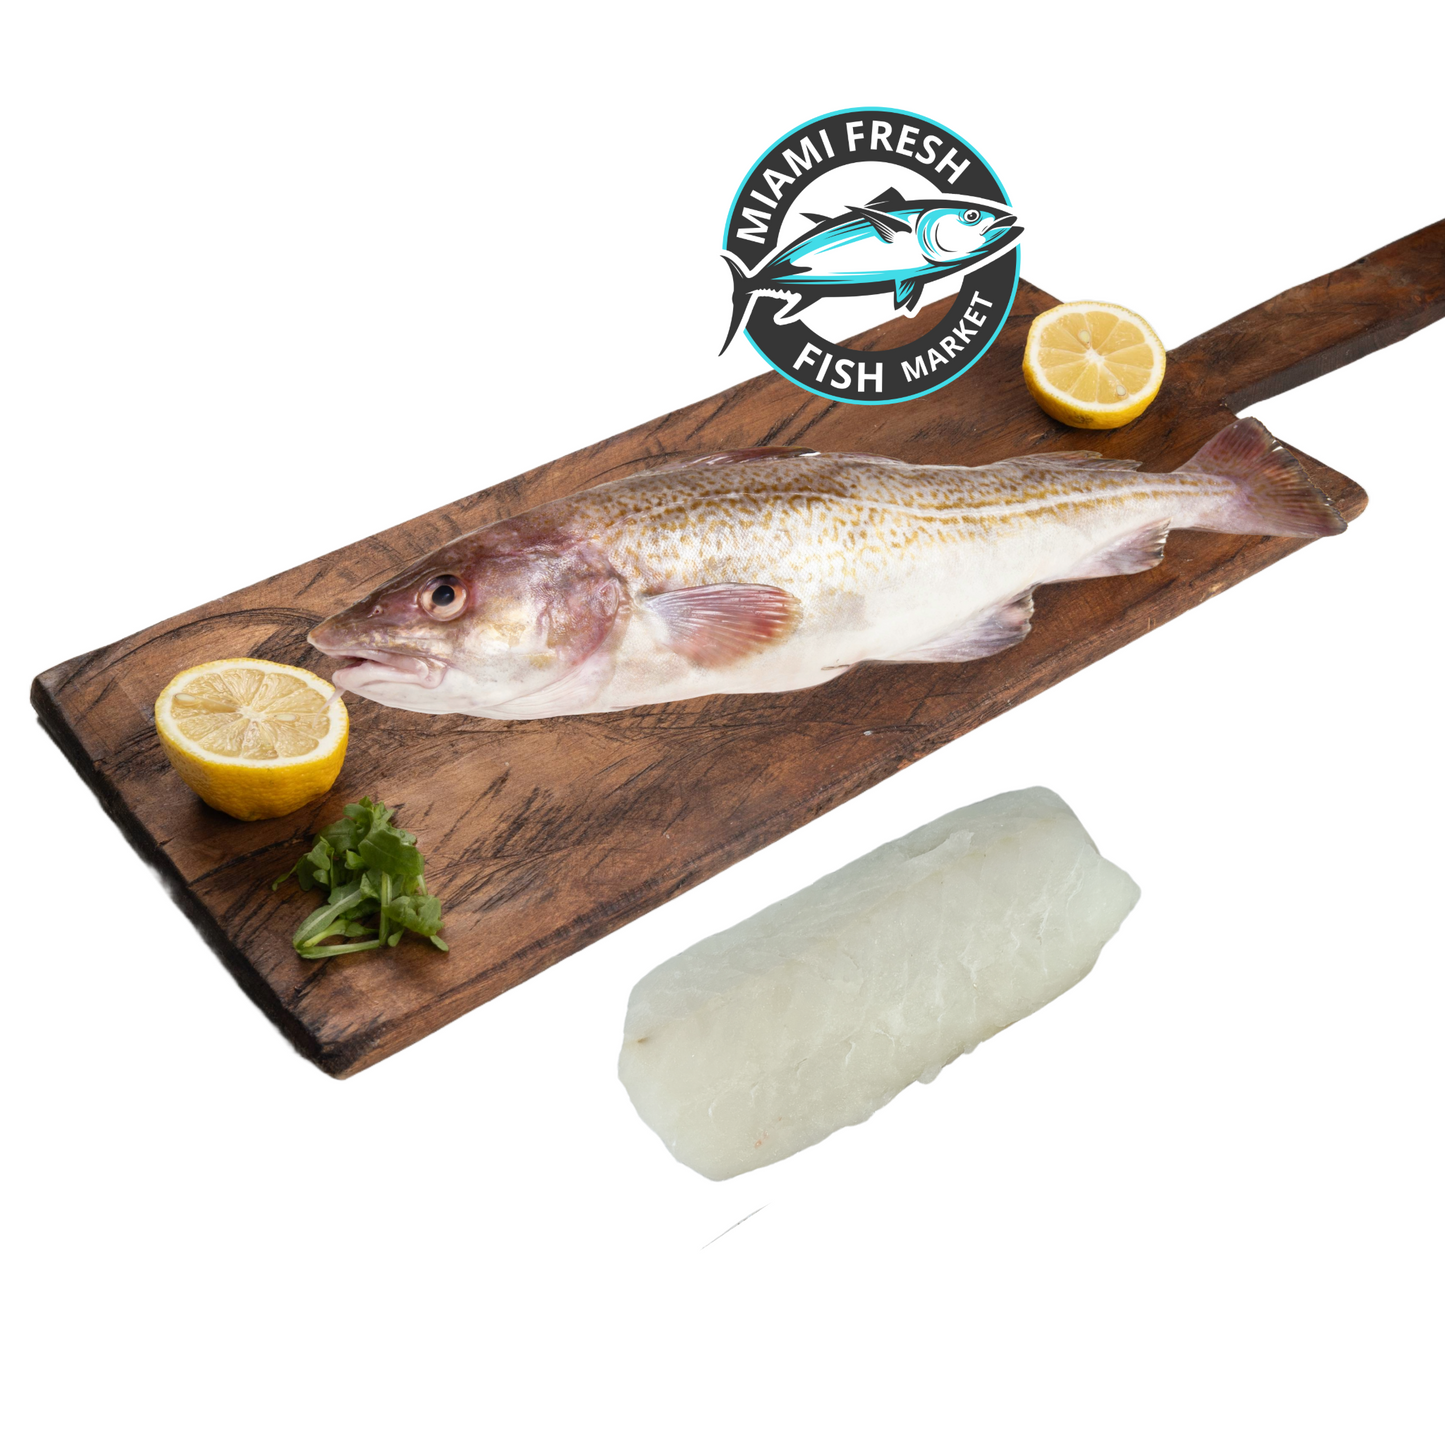 Black Cod Wild Fresh Fish | Fillet Per Pound